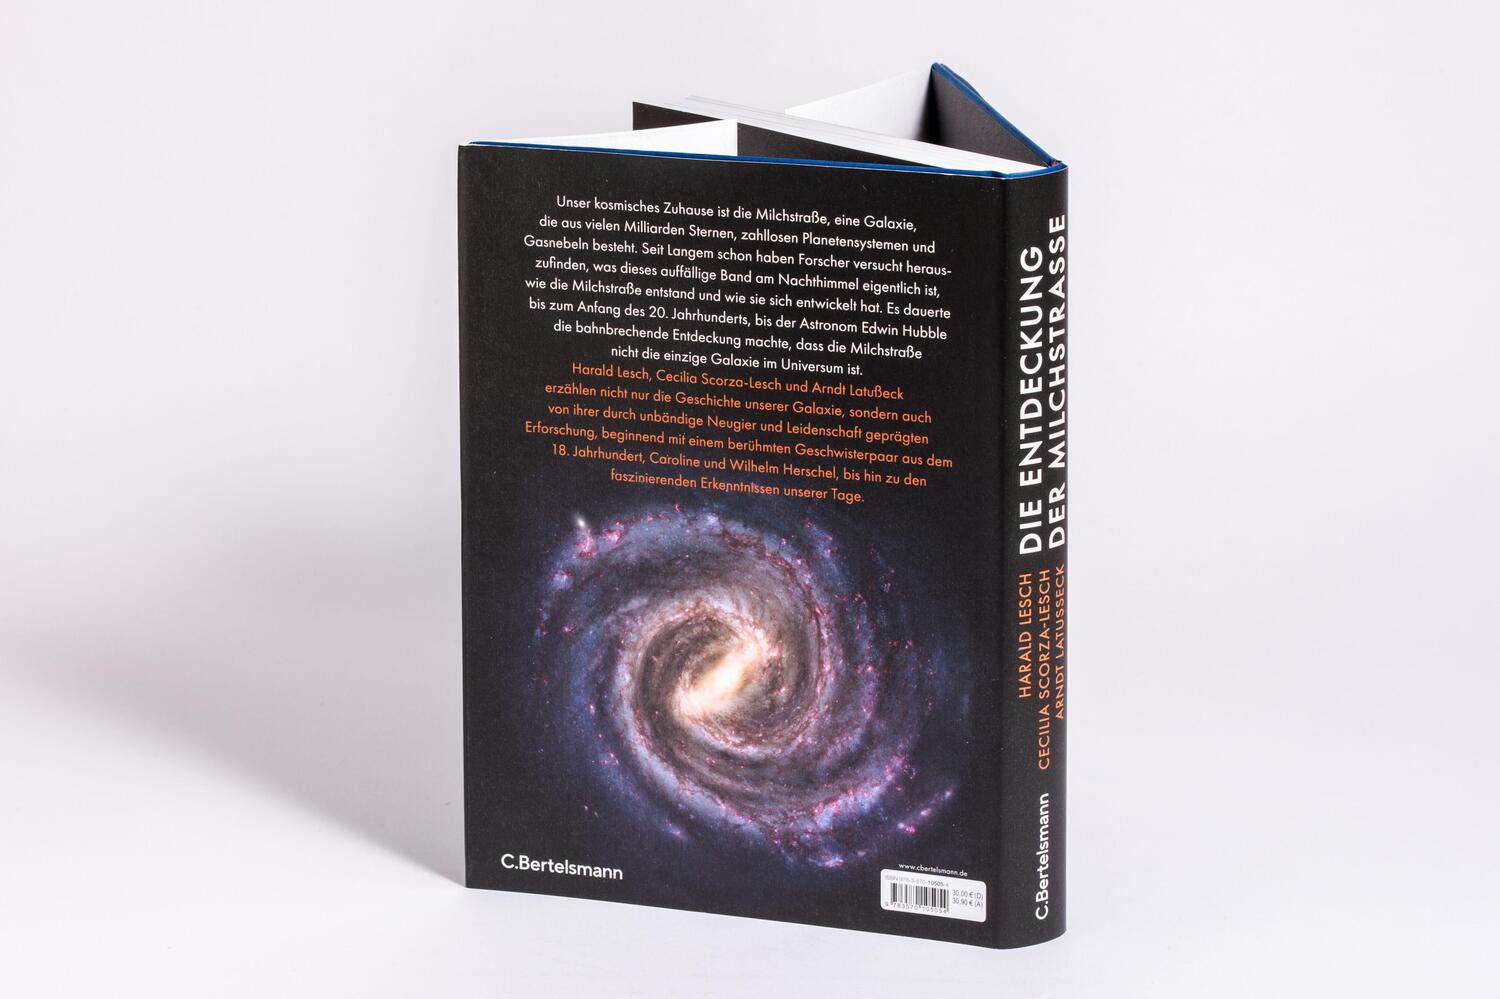 Bild: 9783570105054 | Die Entdeckung der Milchstraße | Harald Lesch (u. a.) | Buch | 304 S.